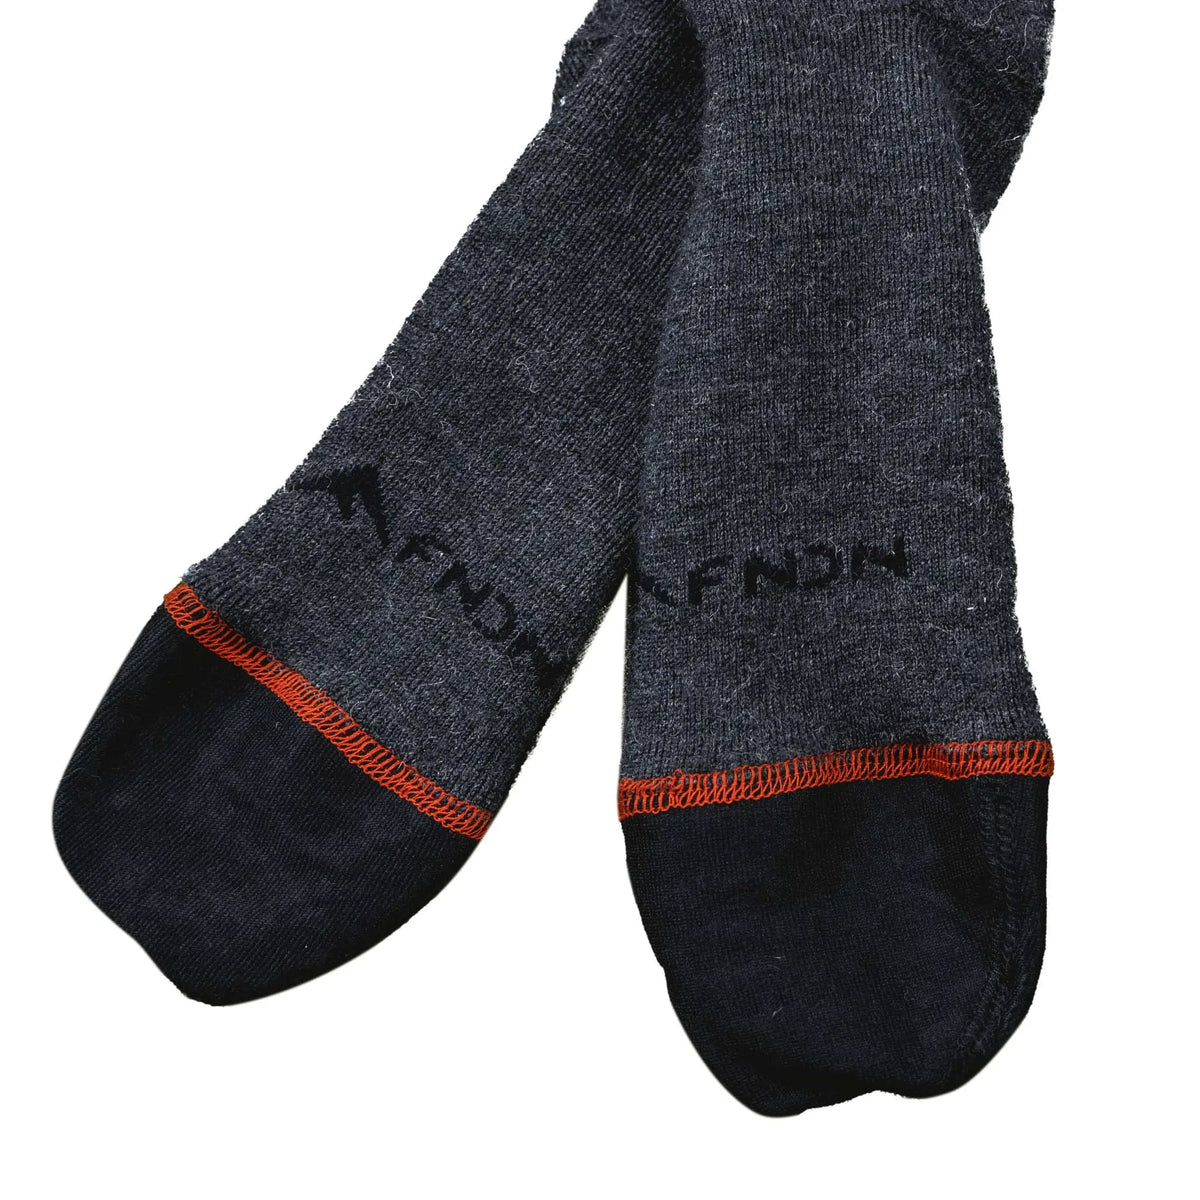 FNDN Heated 3.7V Sports Socks FNDN